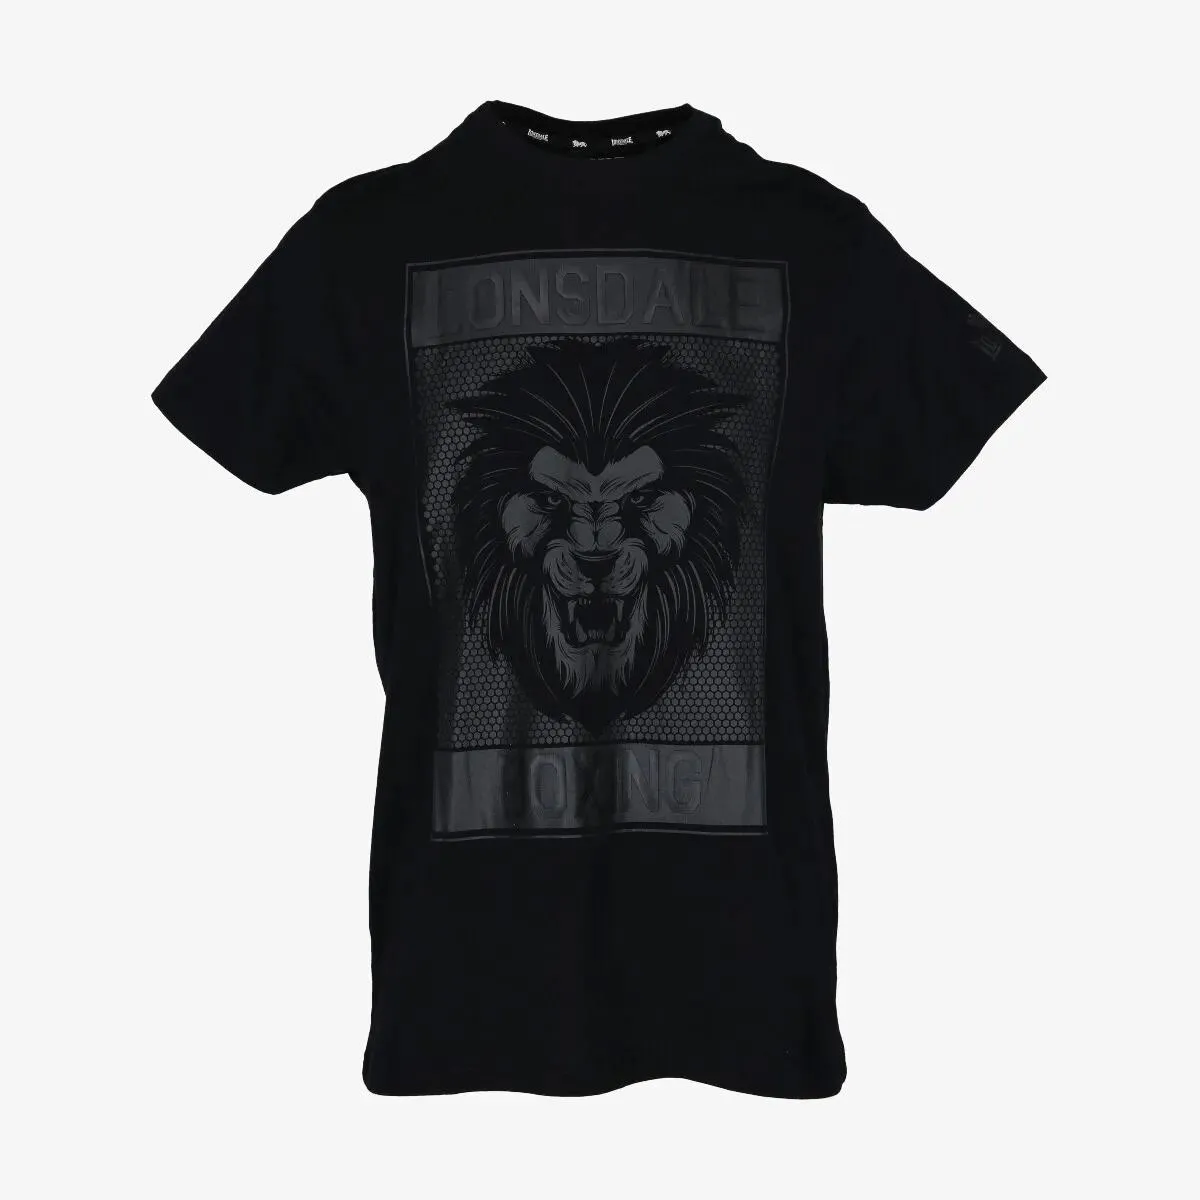 Lonsdale T-shirt BLK Lion 